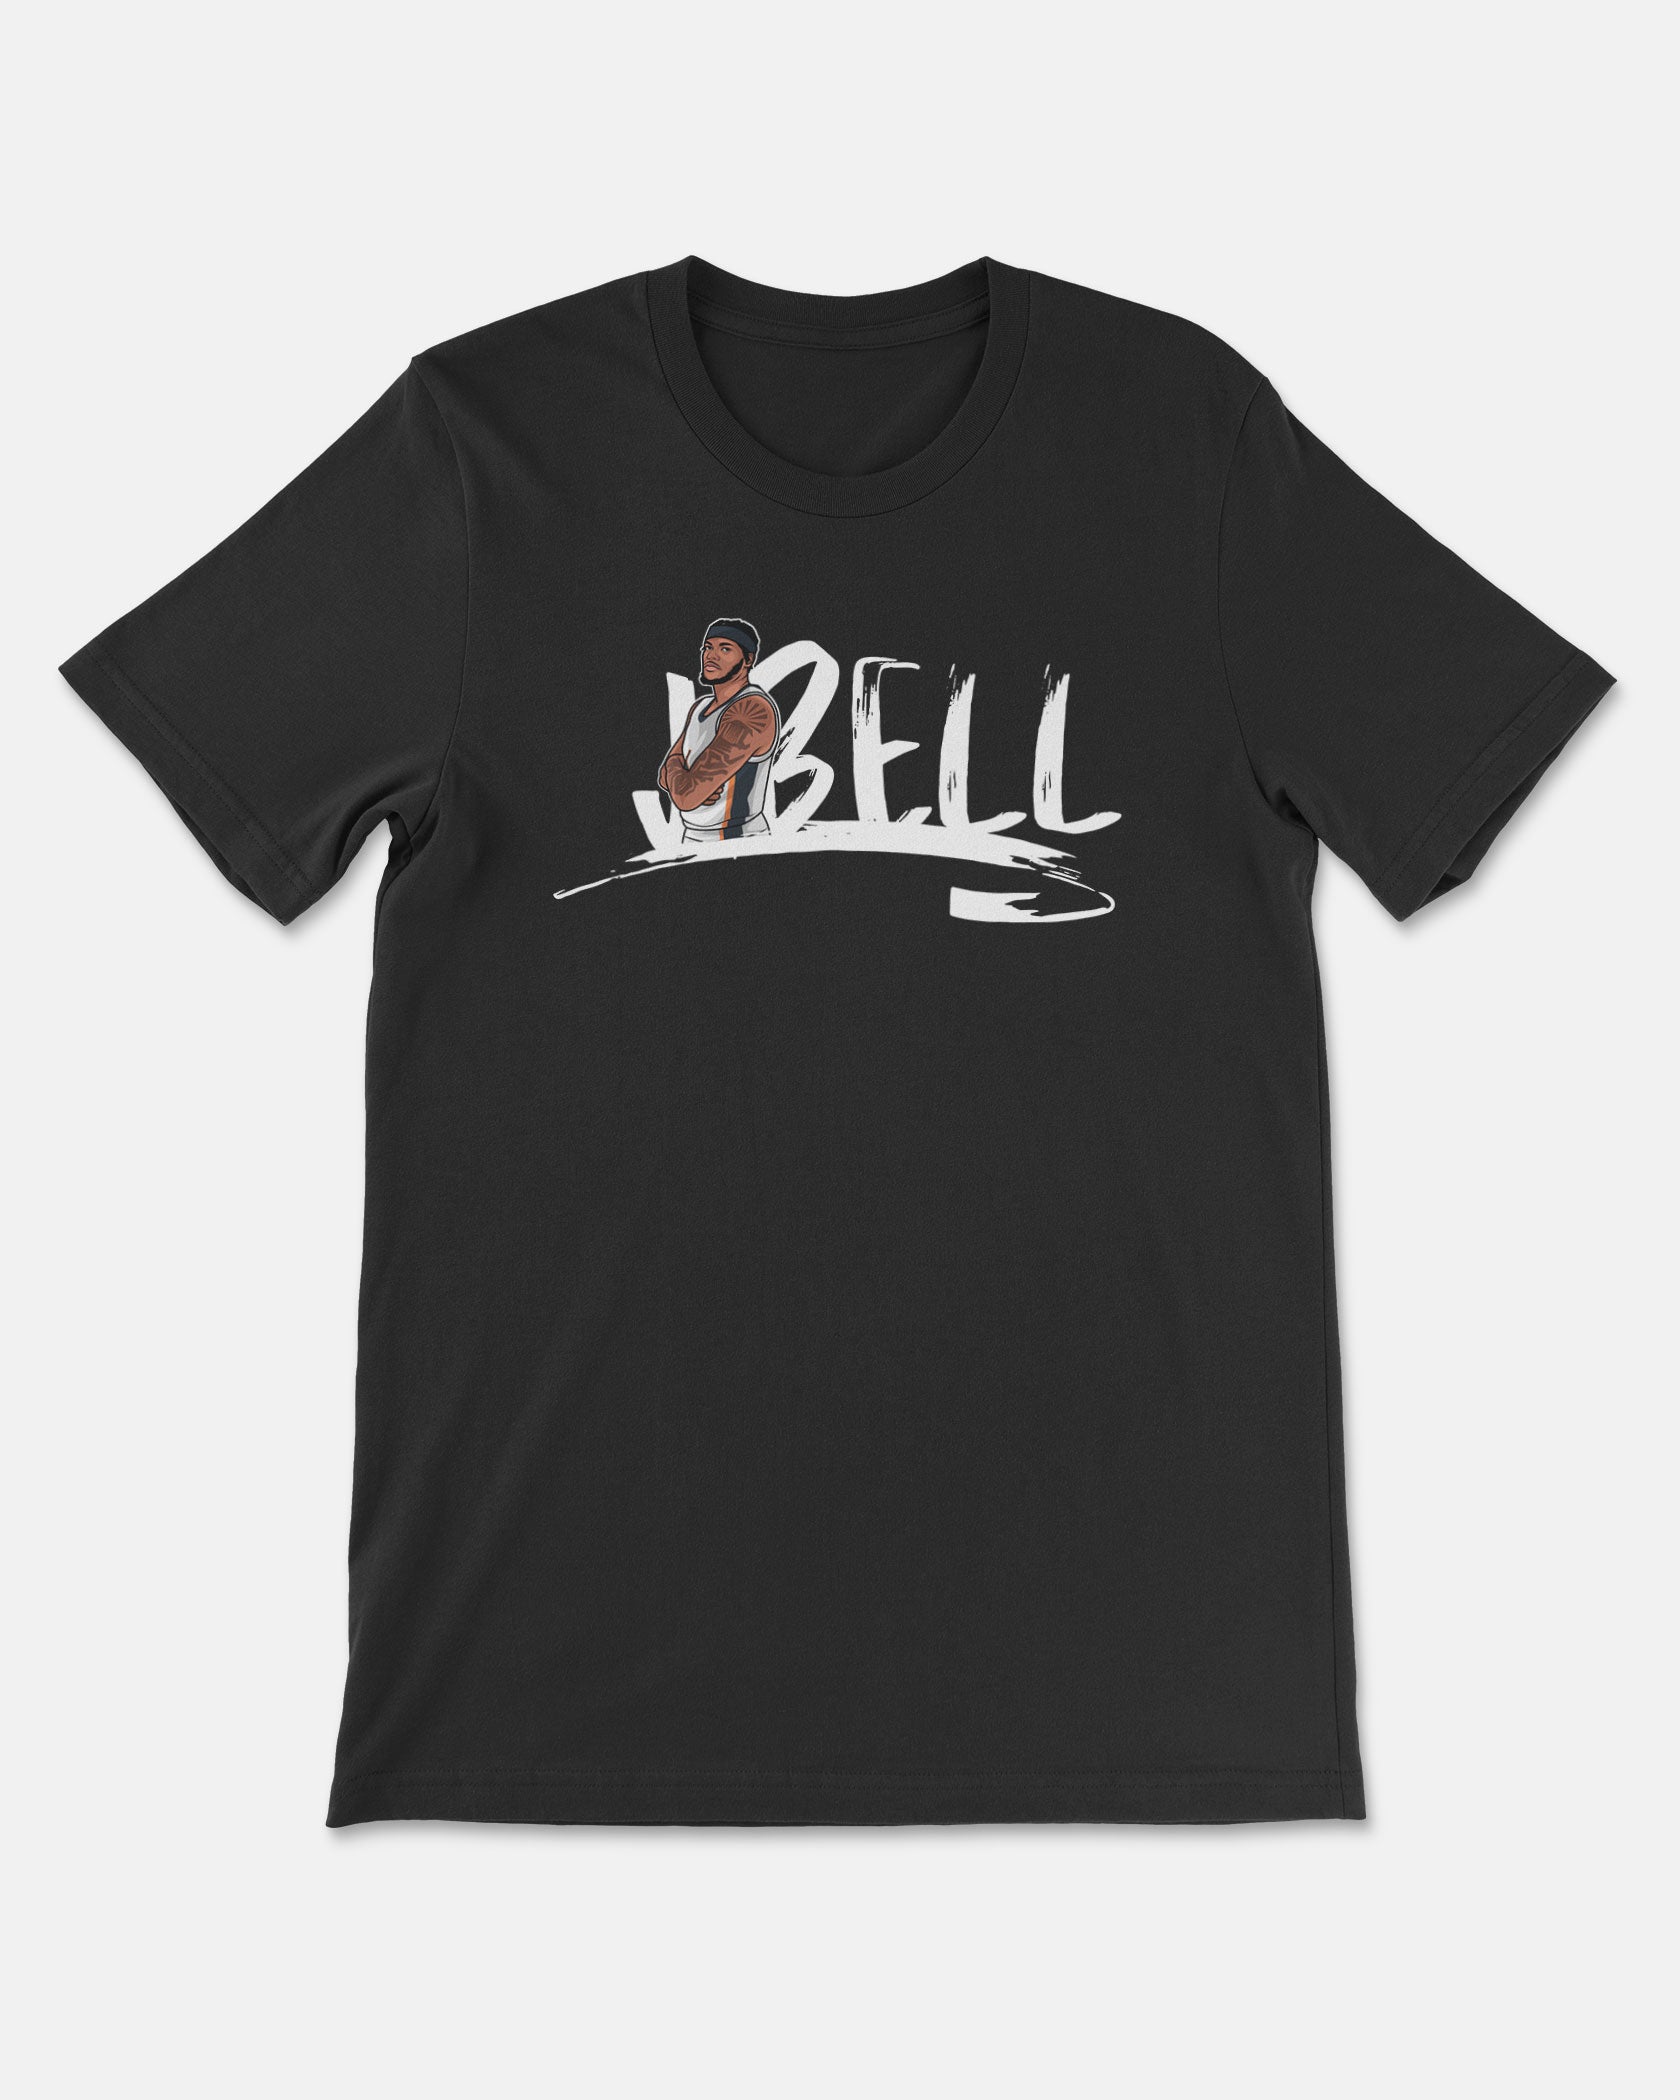 Jordan Bell Shirt 002